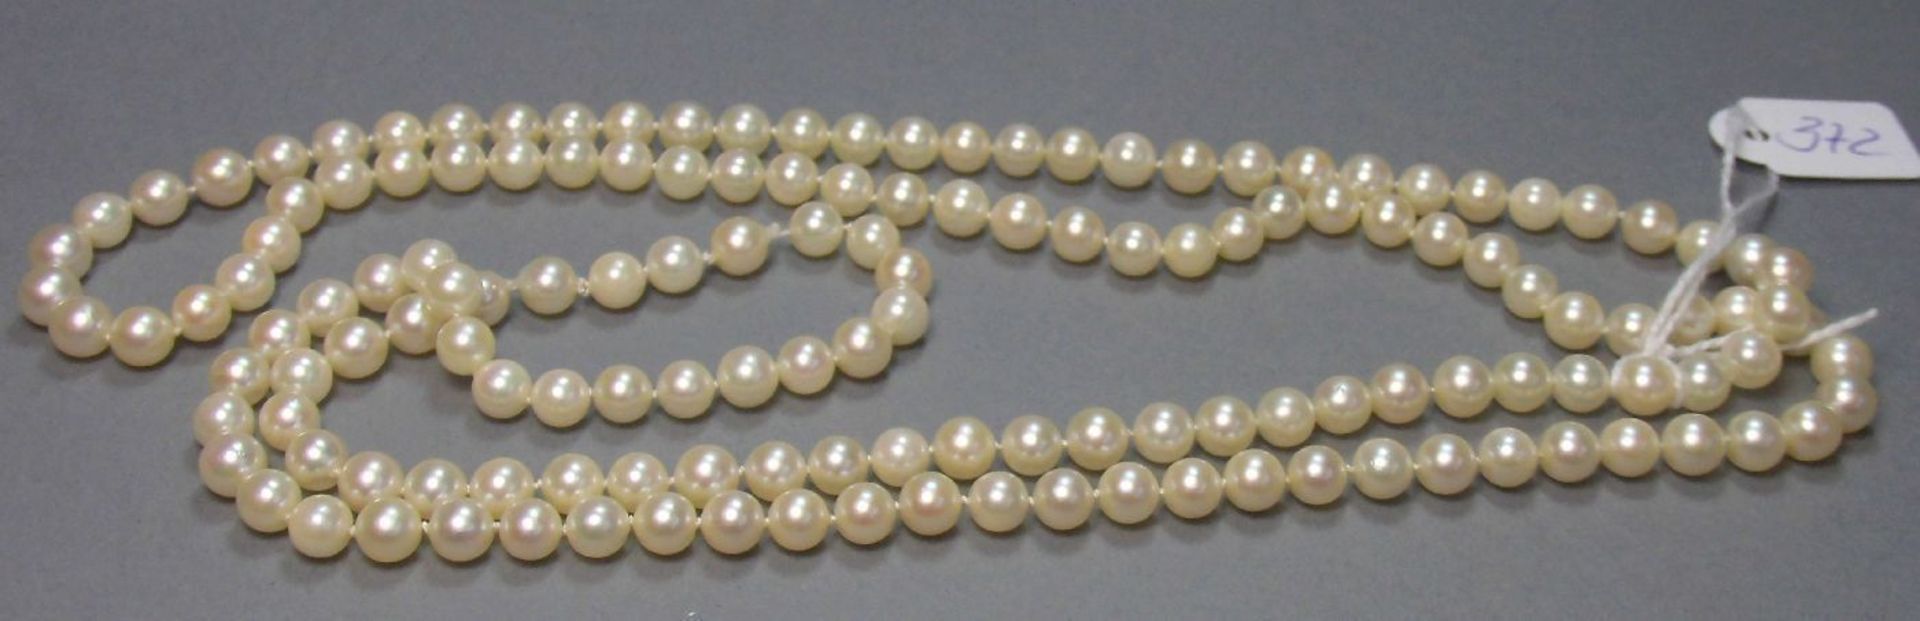 PERLENKETTE als Endloskette, Perlen-D. 6 mm, L. 98 cm; Strang von 5 cm als Verlängerung / Ersatz. - Bild 2 aus 2